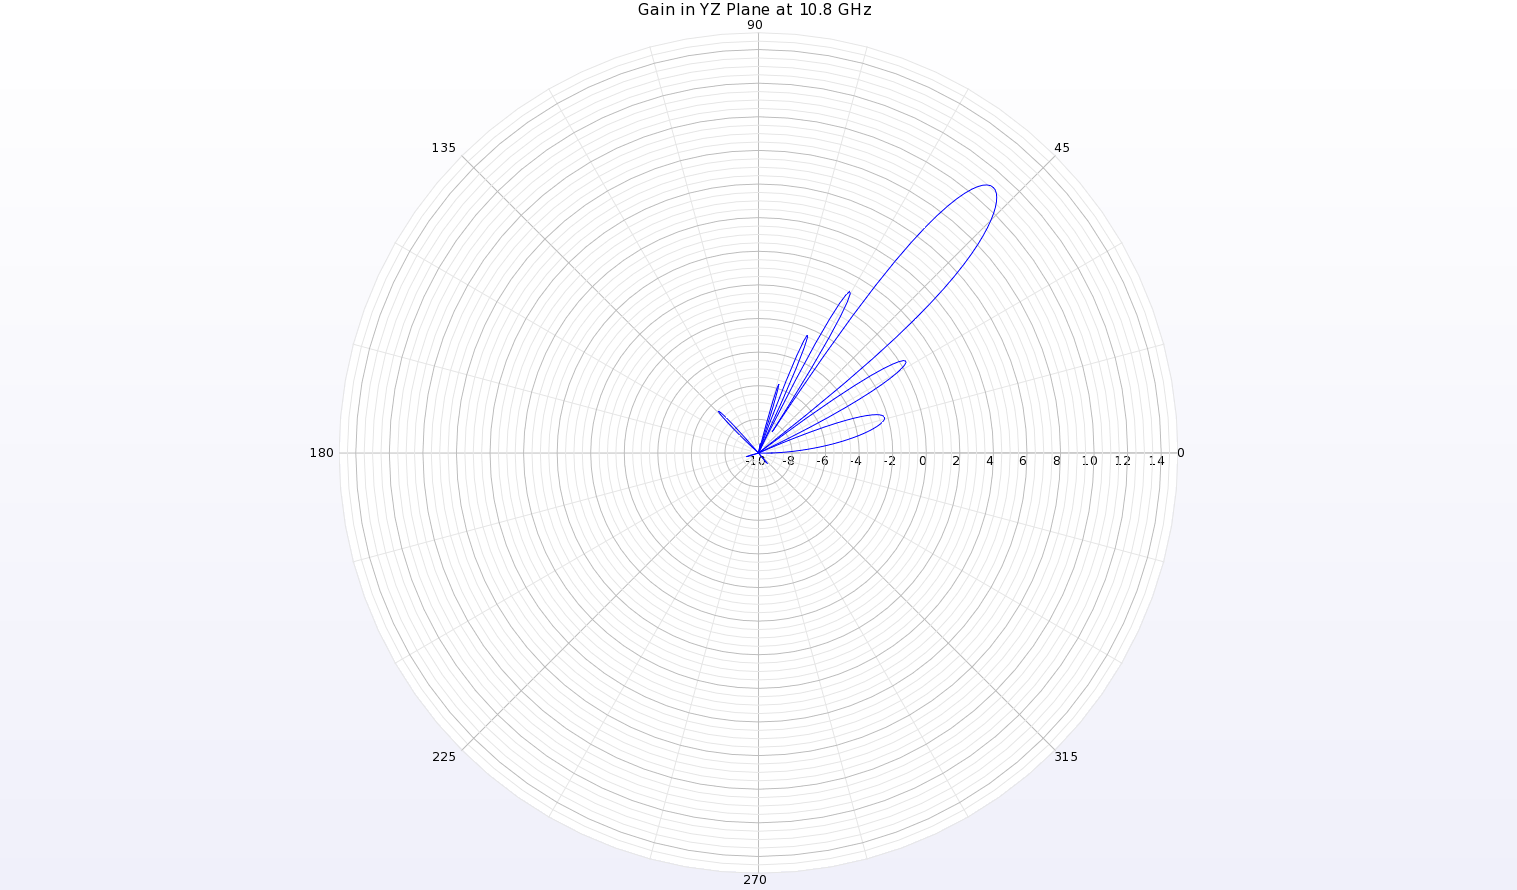 Figura 10: Un diagrama polar del diagrama de ganancia a 10,8 GHz en el plano YZ de la antena muestra un haz en theta=49 grados con una ganancia de pico de 11,1 dBi.